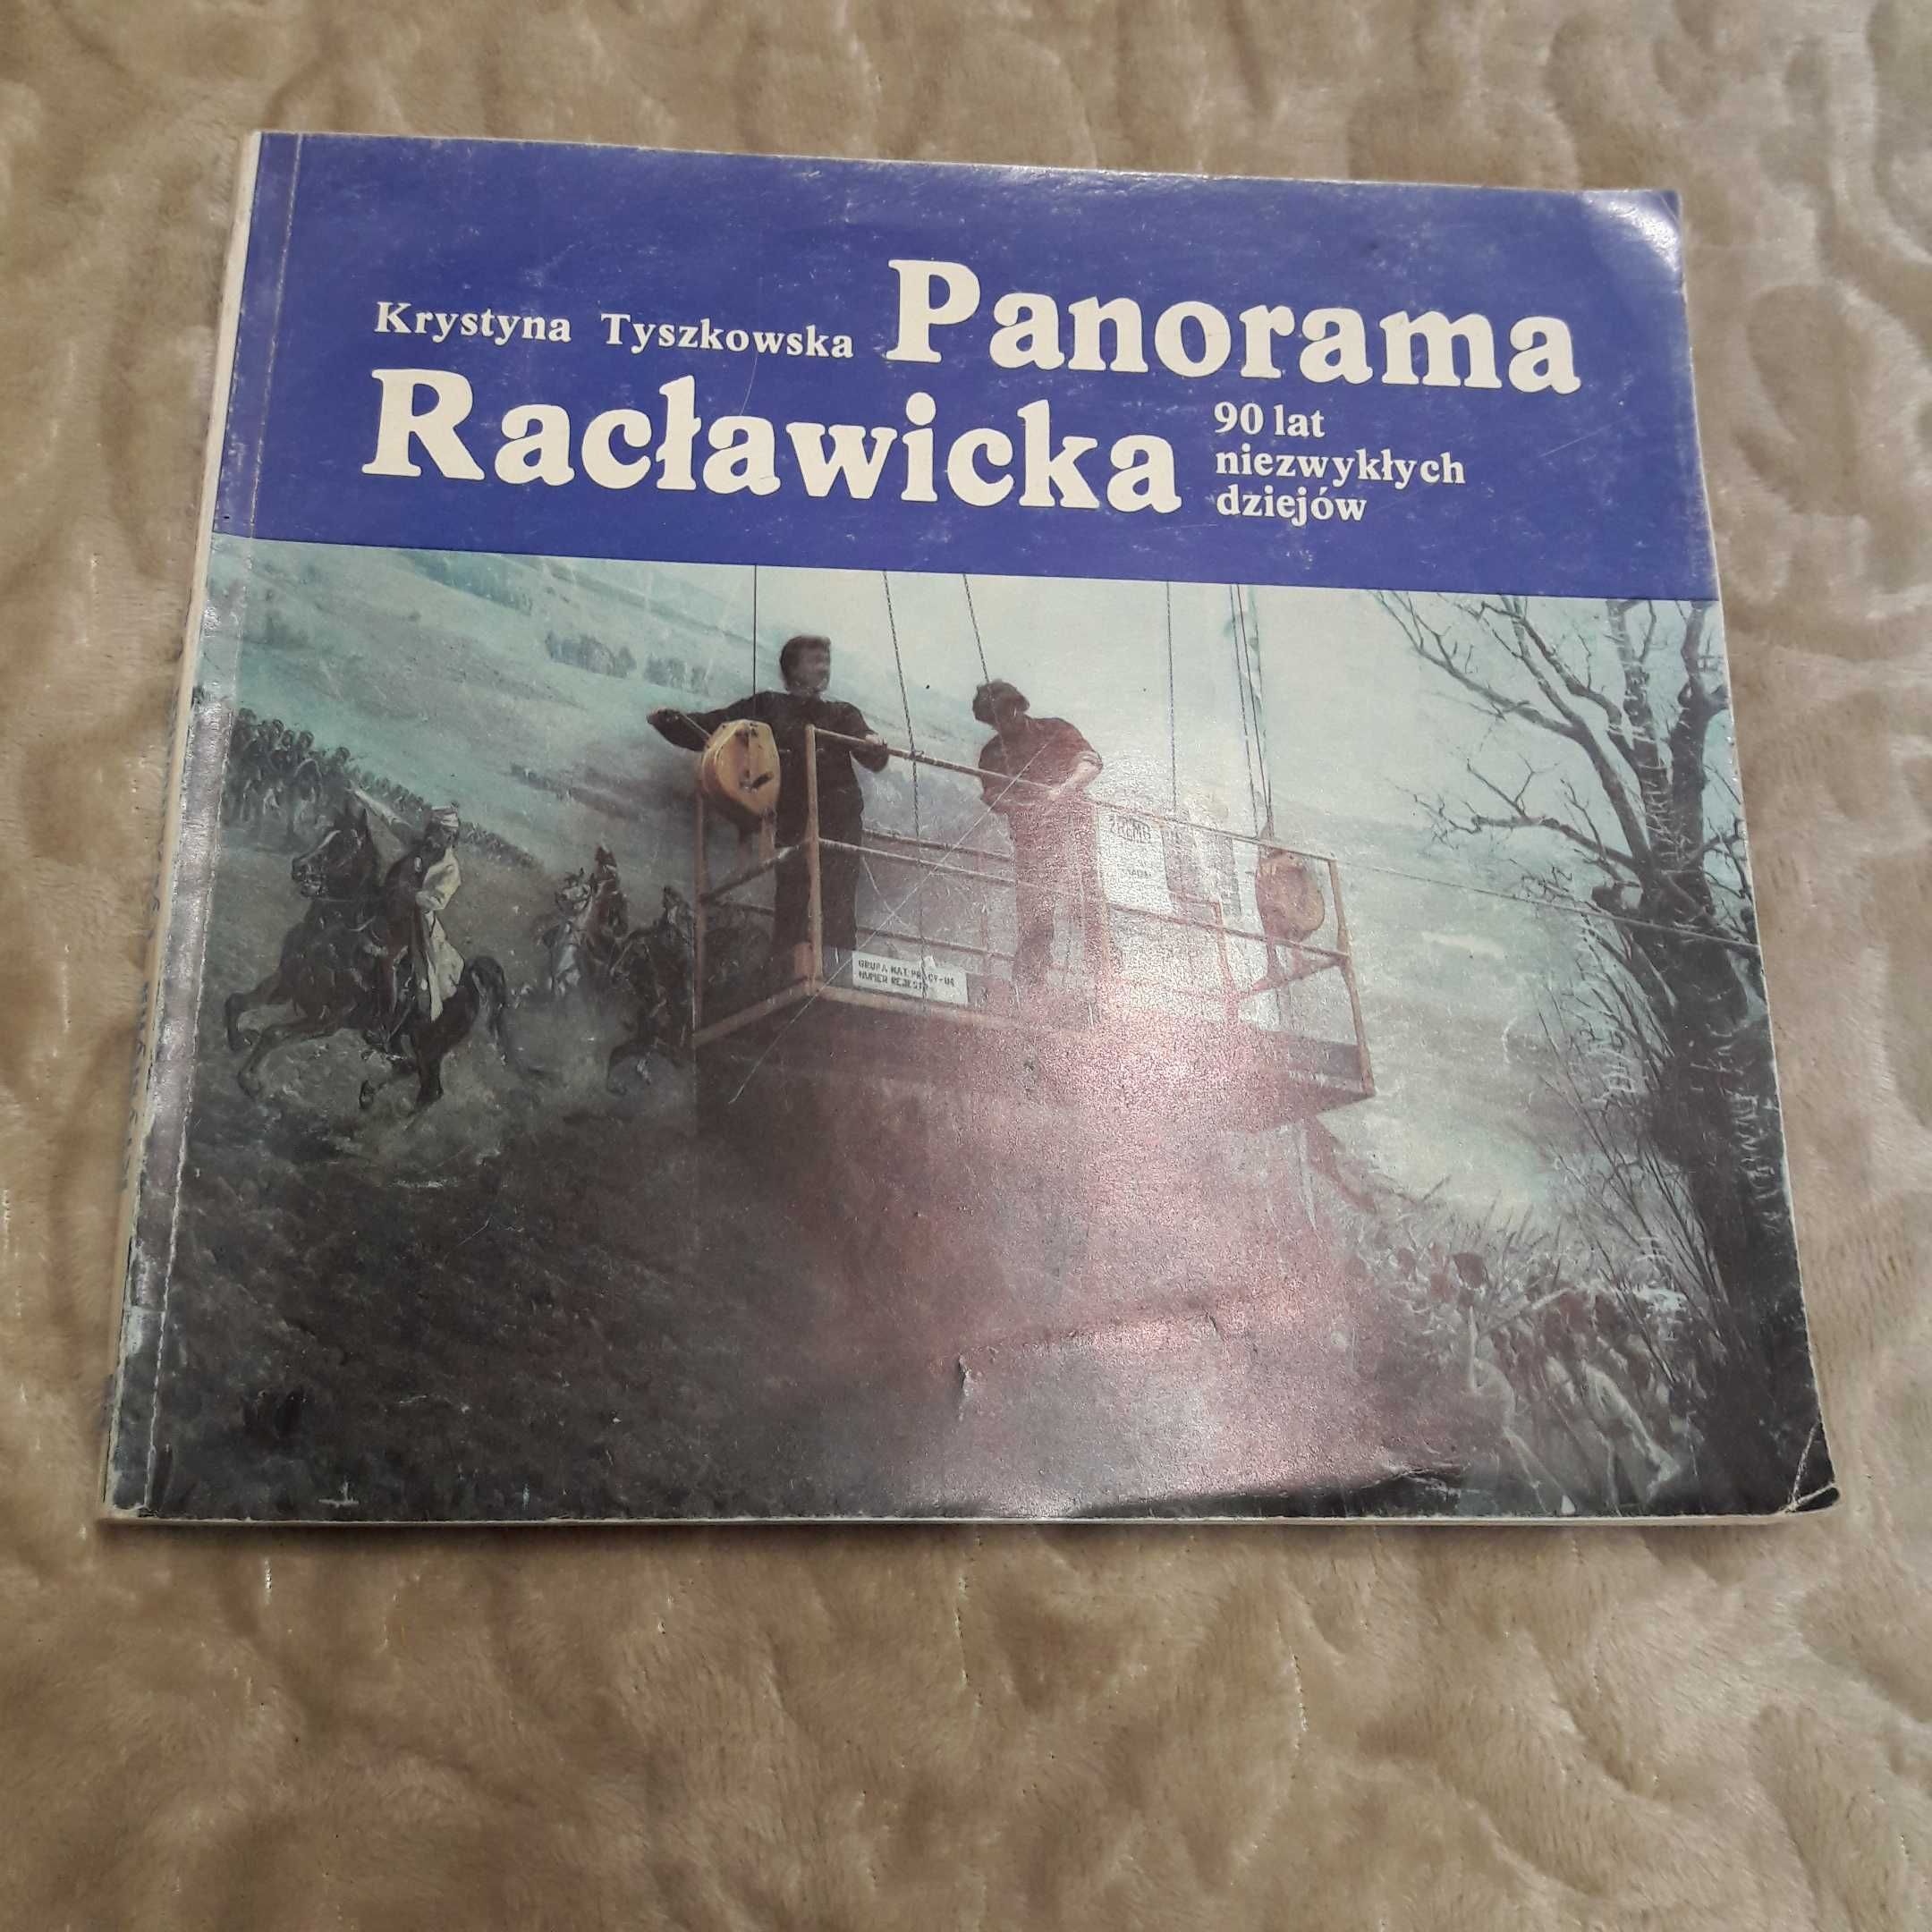 Panorama Racławicka - 90 lat niezwykłych dziejów, album